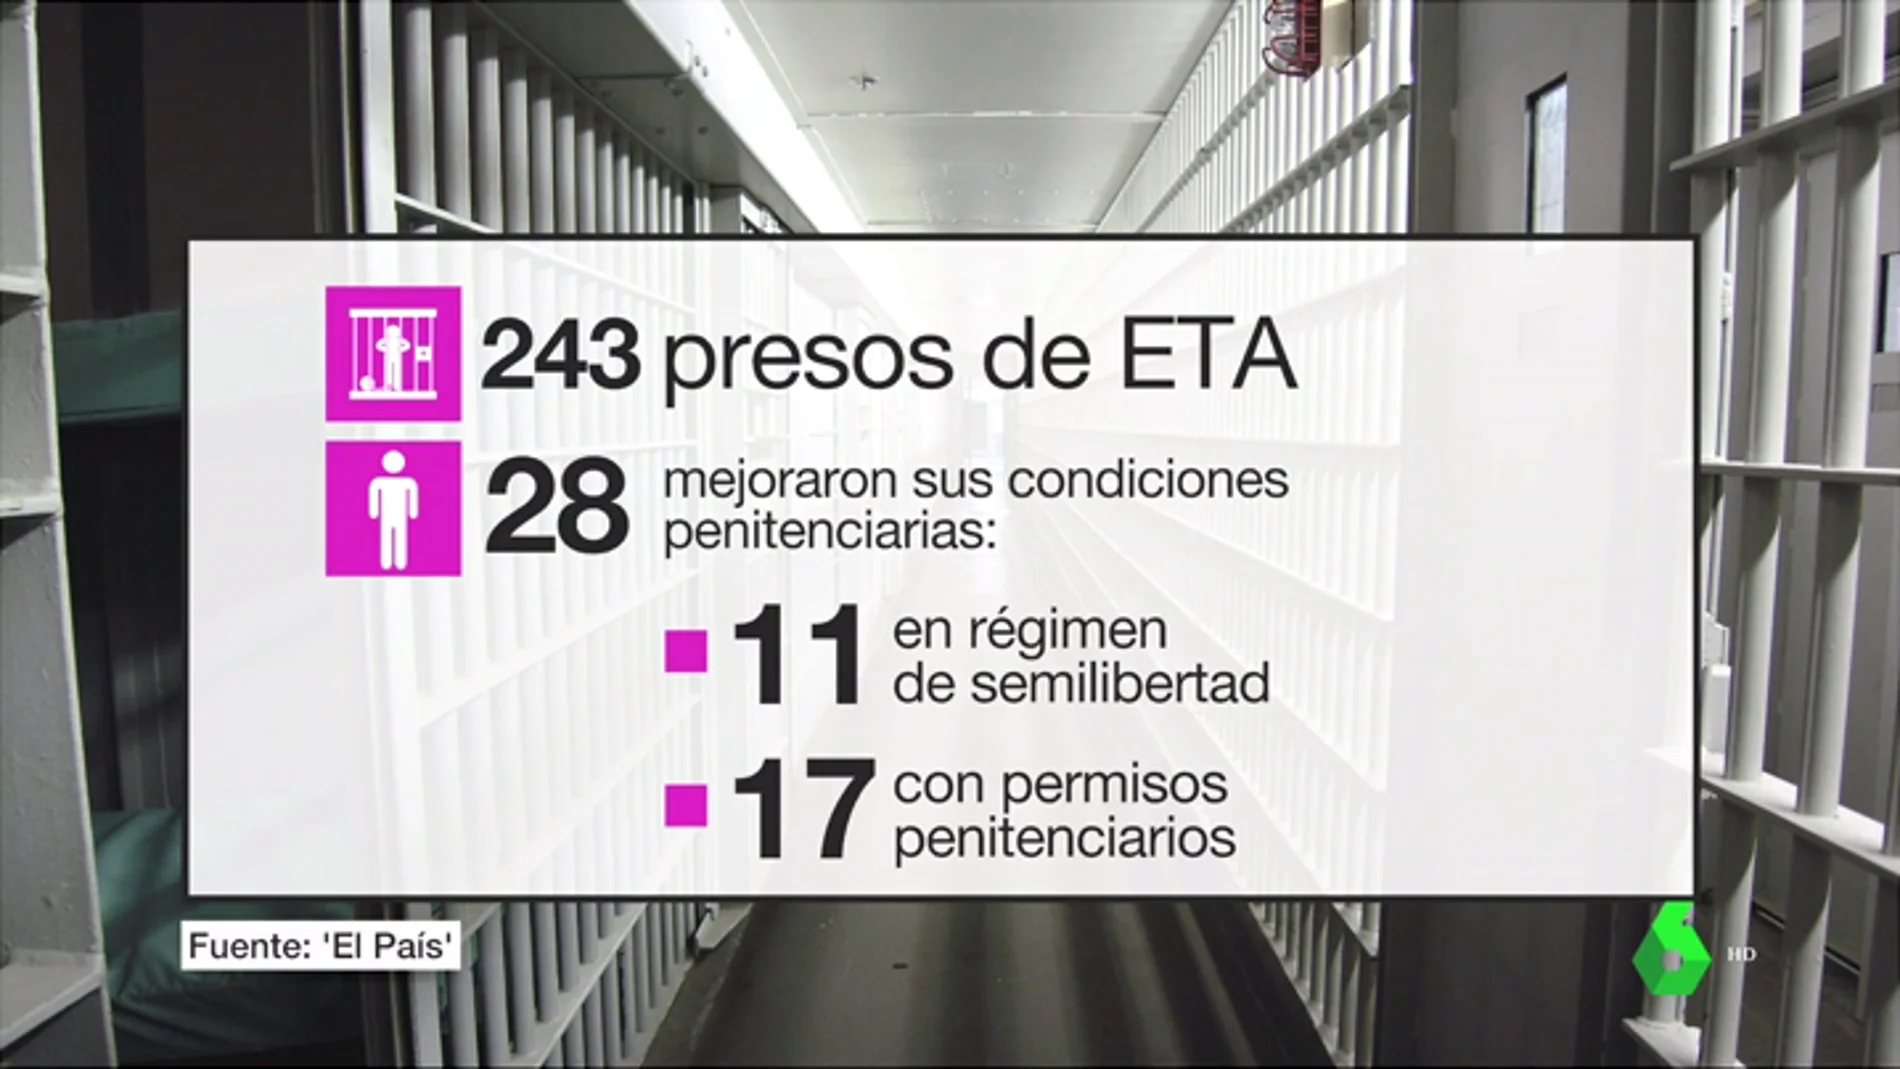 Los datos que el PP olvida sobre presos etarras: en el Gobierno de Rajoy, 28 mejoraron sus condiciones en prisión